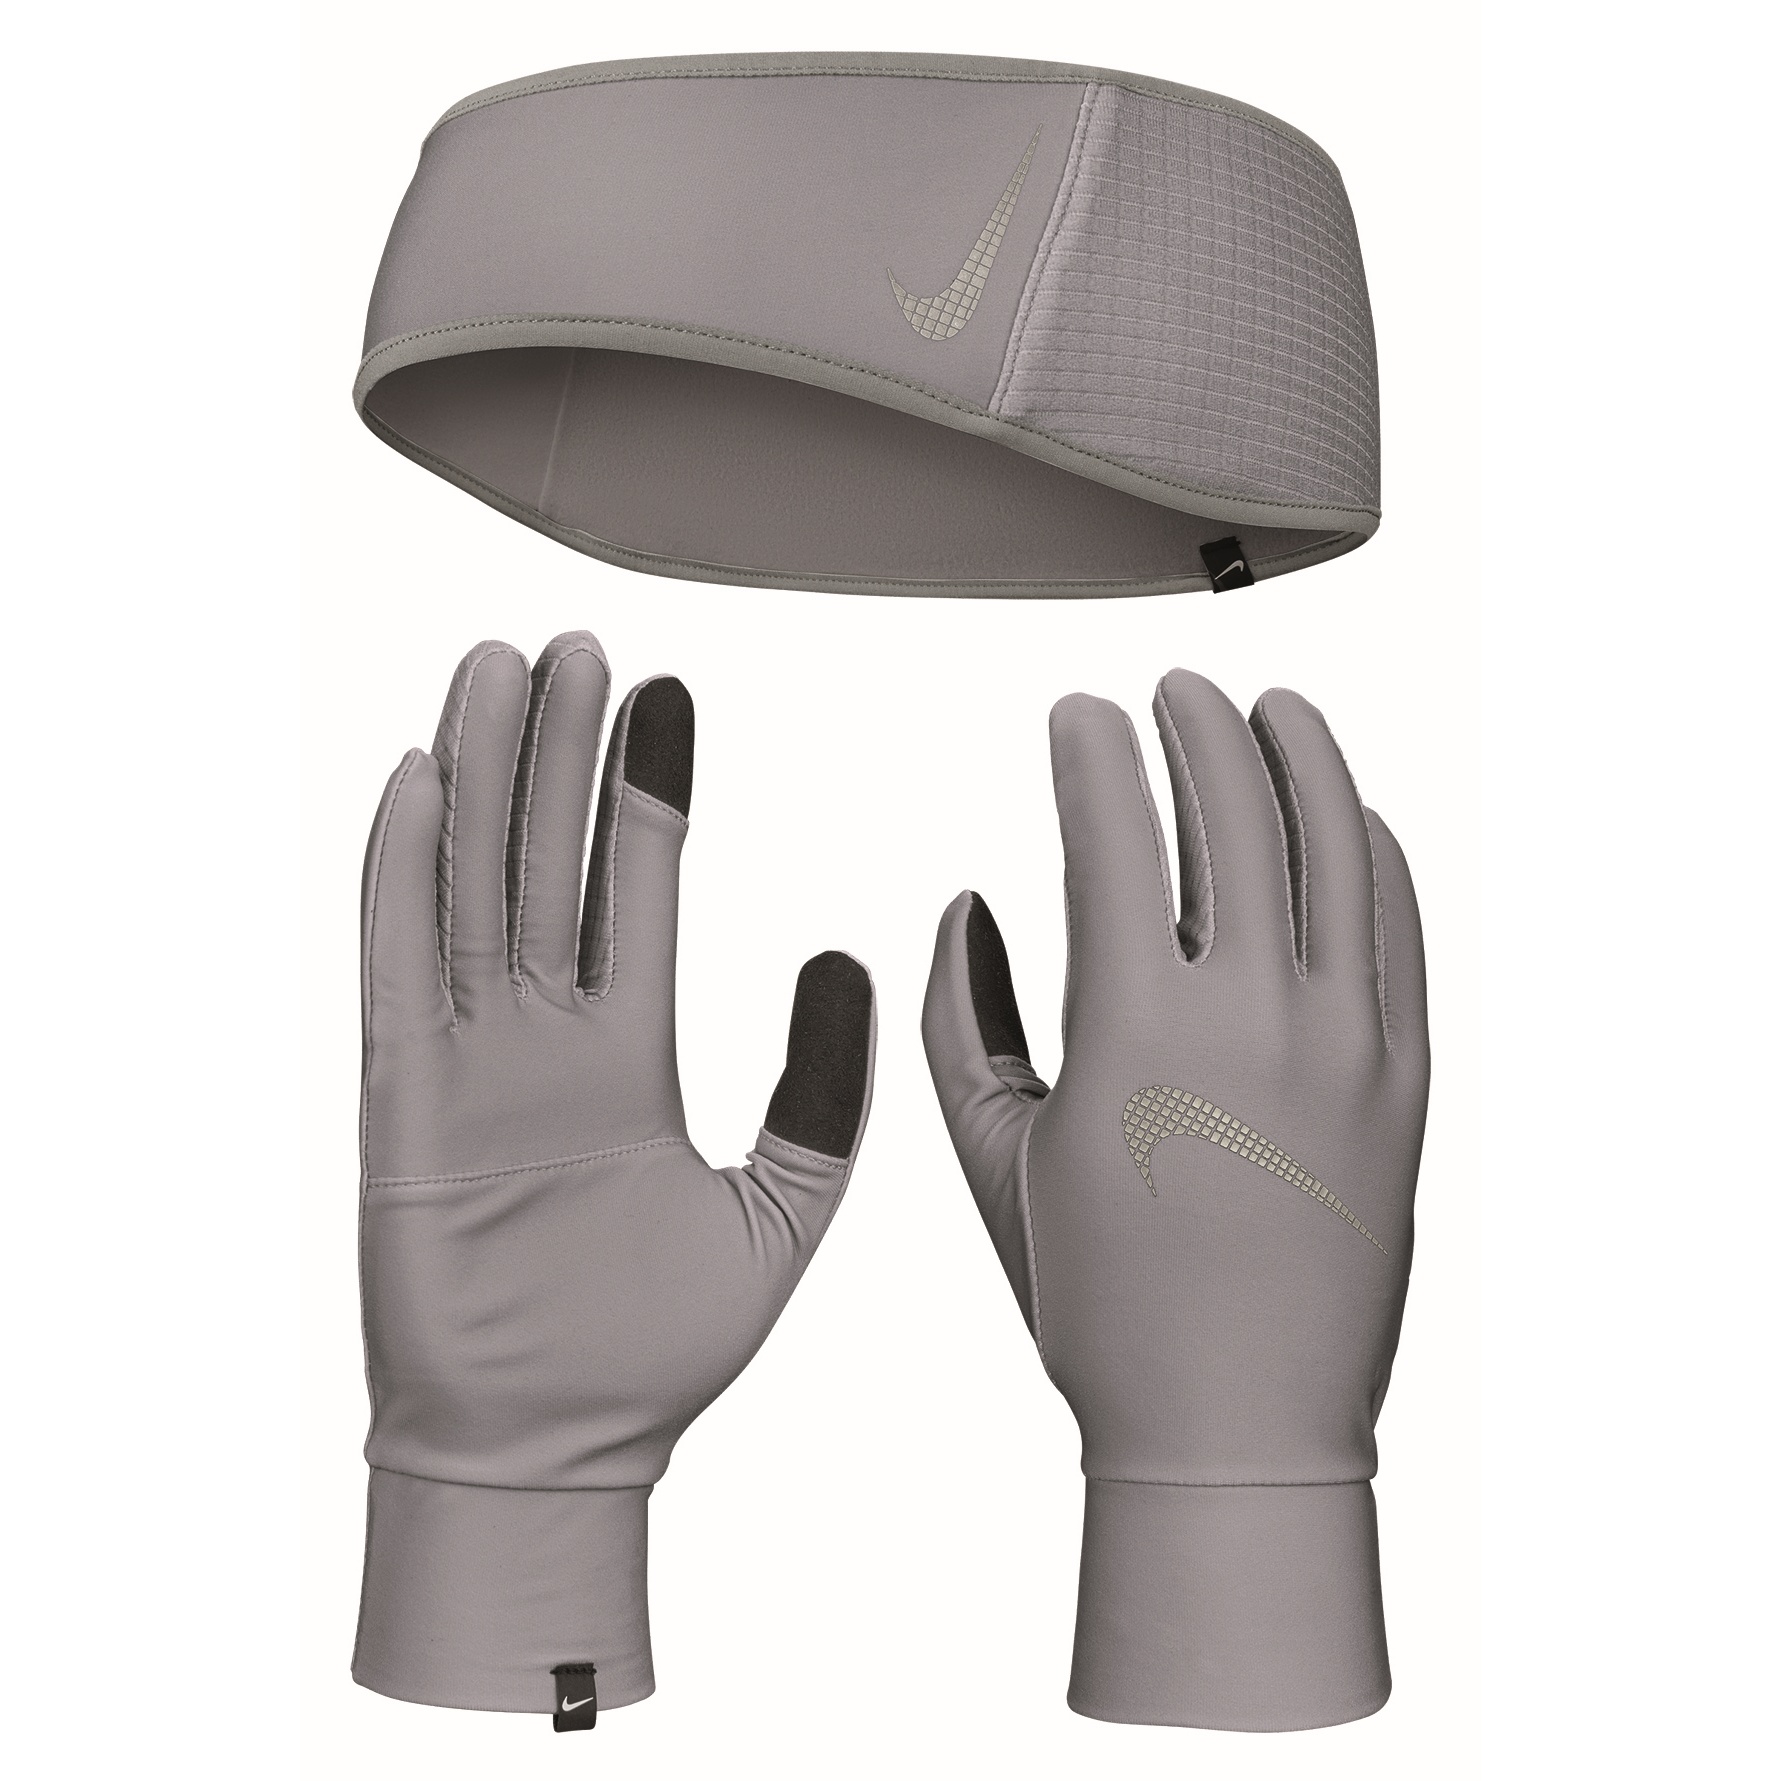 Produktbild von Nike Damen Essential Stirnband-/Handschuhe-Set - smoke grey/particle grey/silver 029